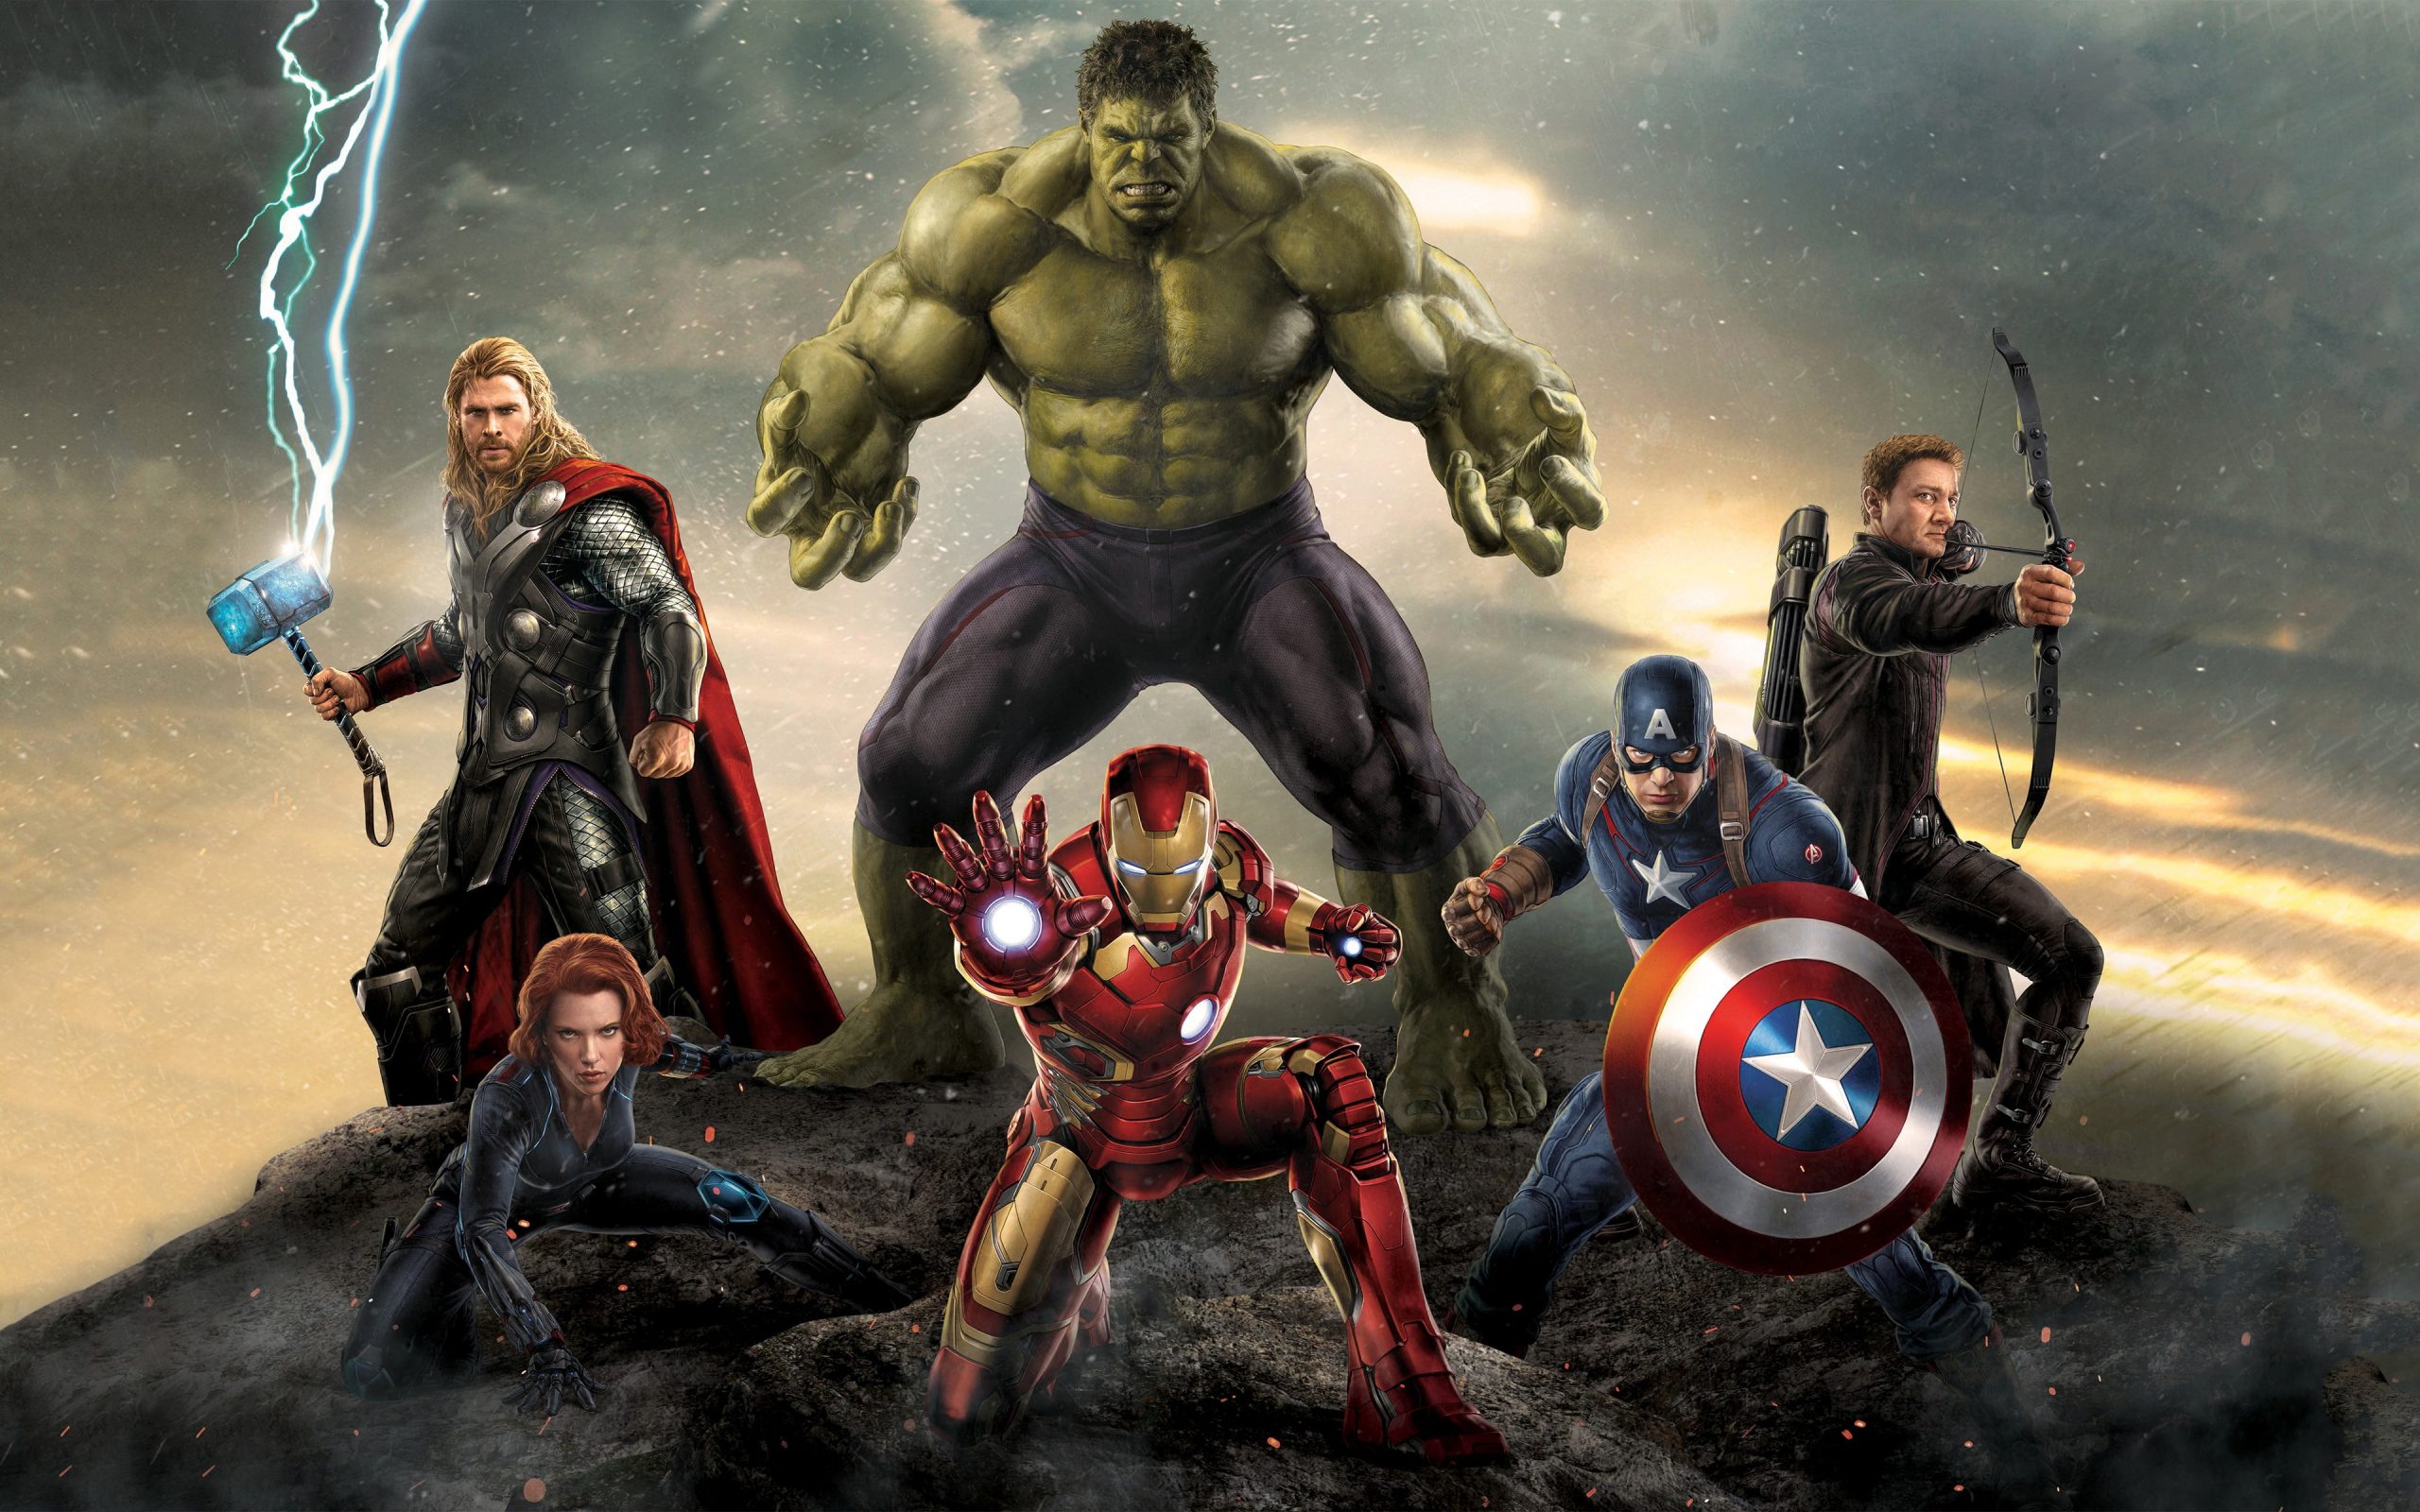 Marvel Avengers Wallpaper, Avengers: Age Of Ultron, The Avengers • Wallpaper For You